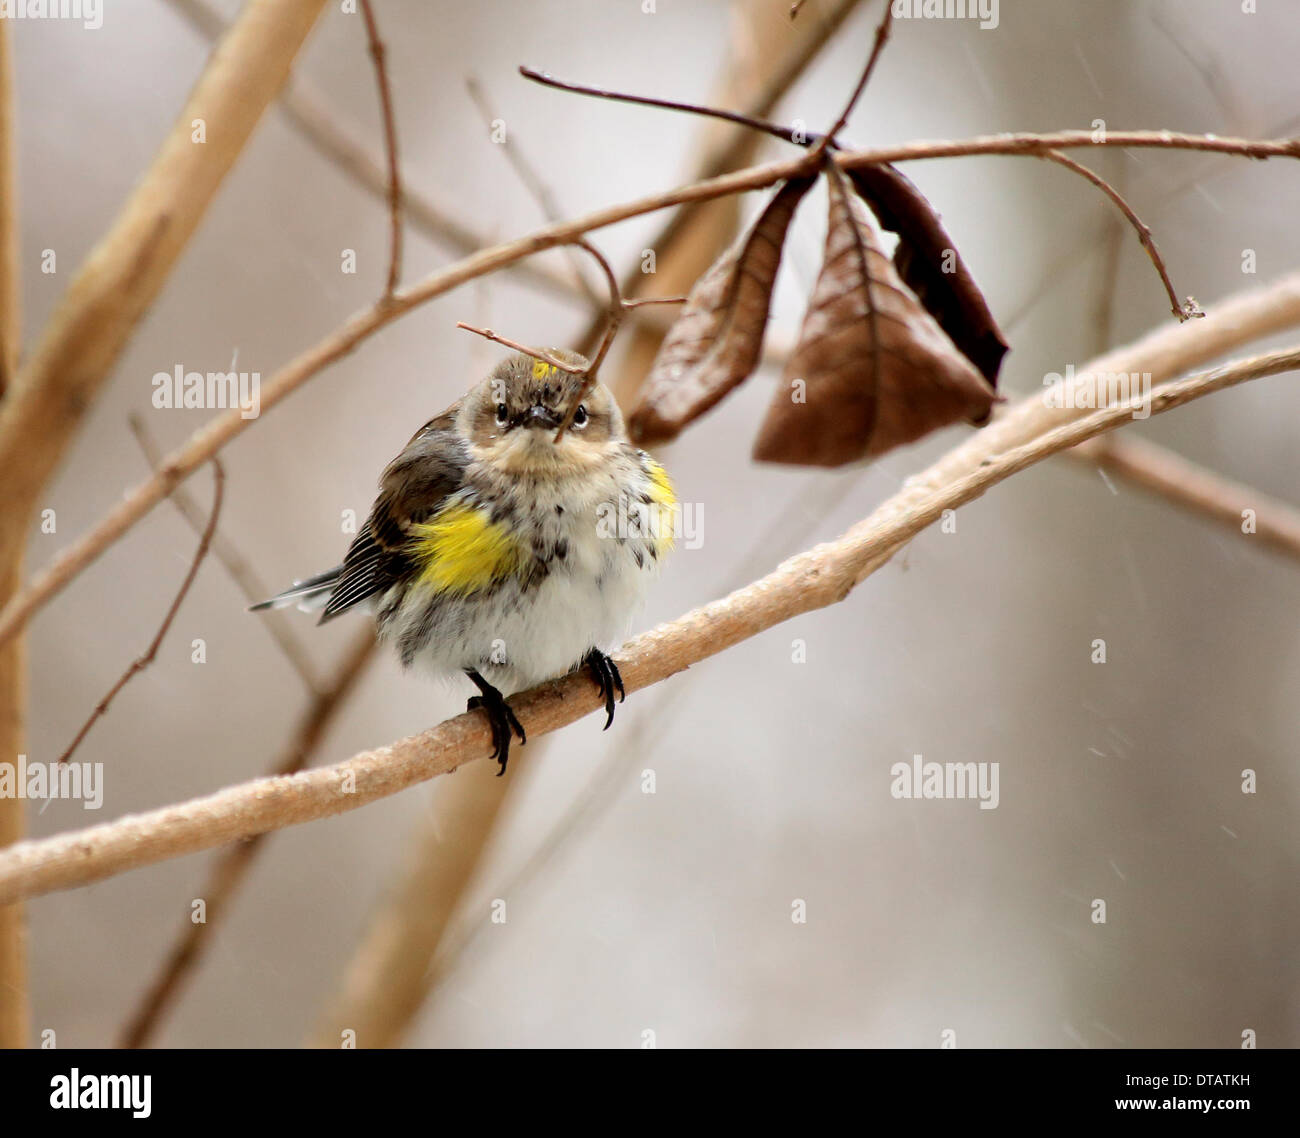 Columbia, Carolina del Sur, EE.UU.. 12 Feb, 2014. Las aves buscando comida después de freek tormenta de hielo y nieve 12/02/14 imagen por Catherine Brown/brian jordan/Alamy Live News Foto de stock